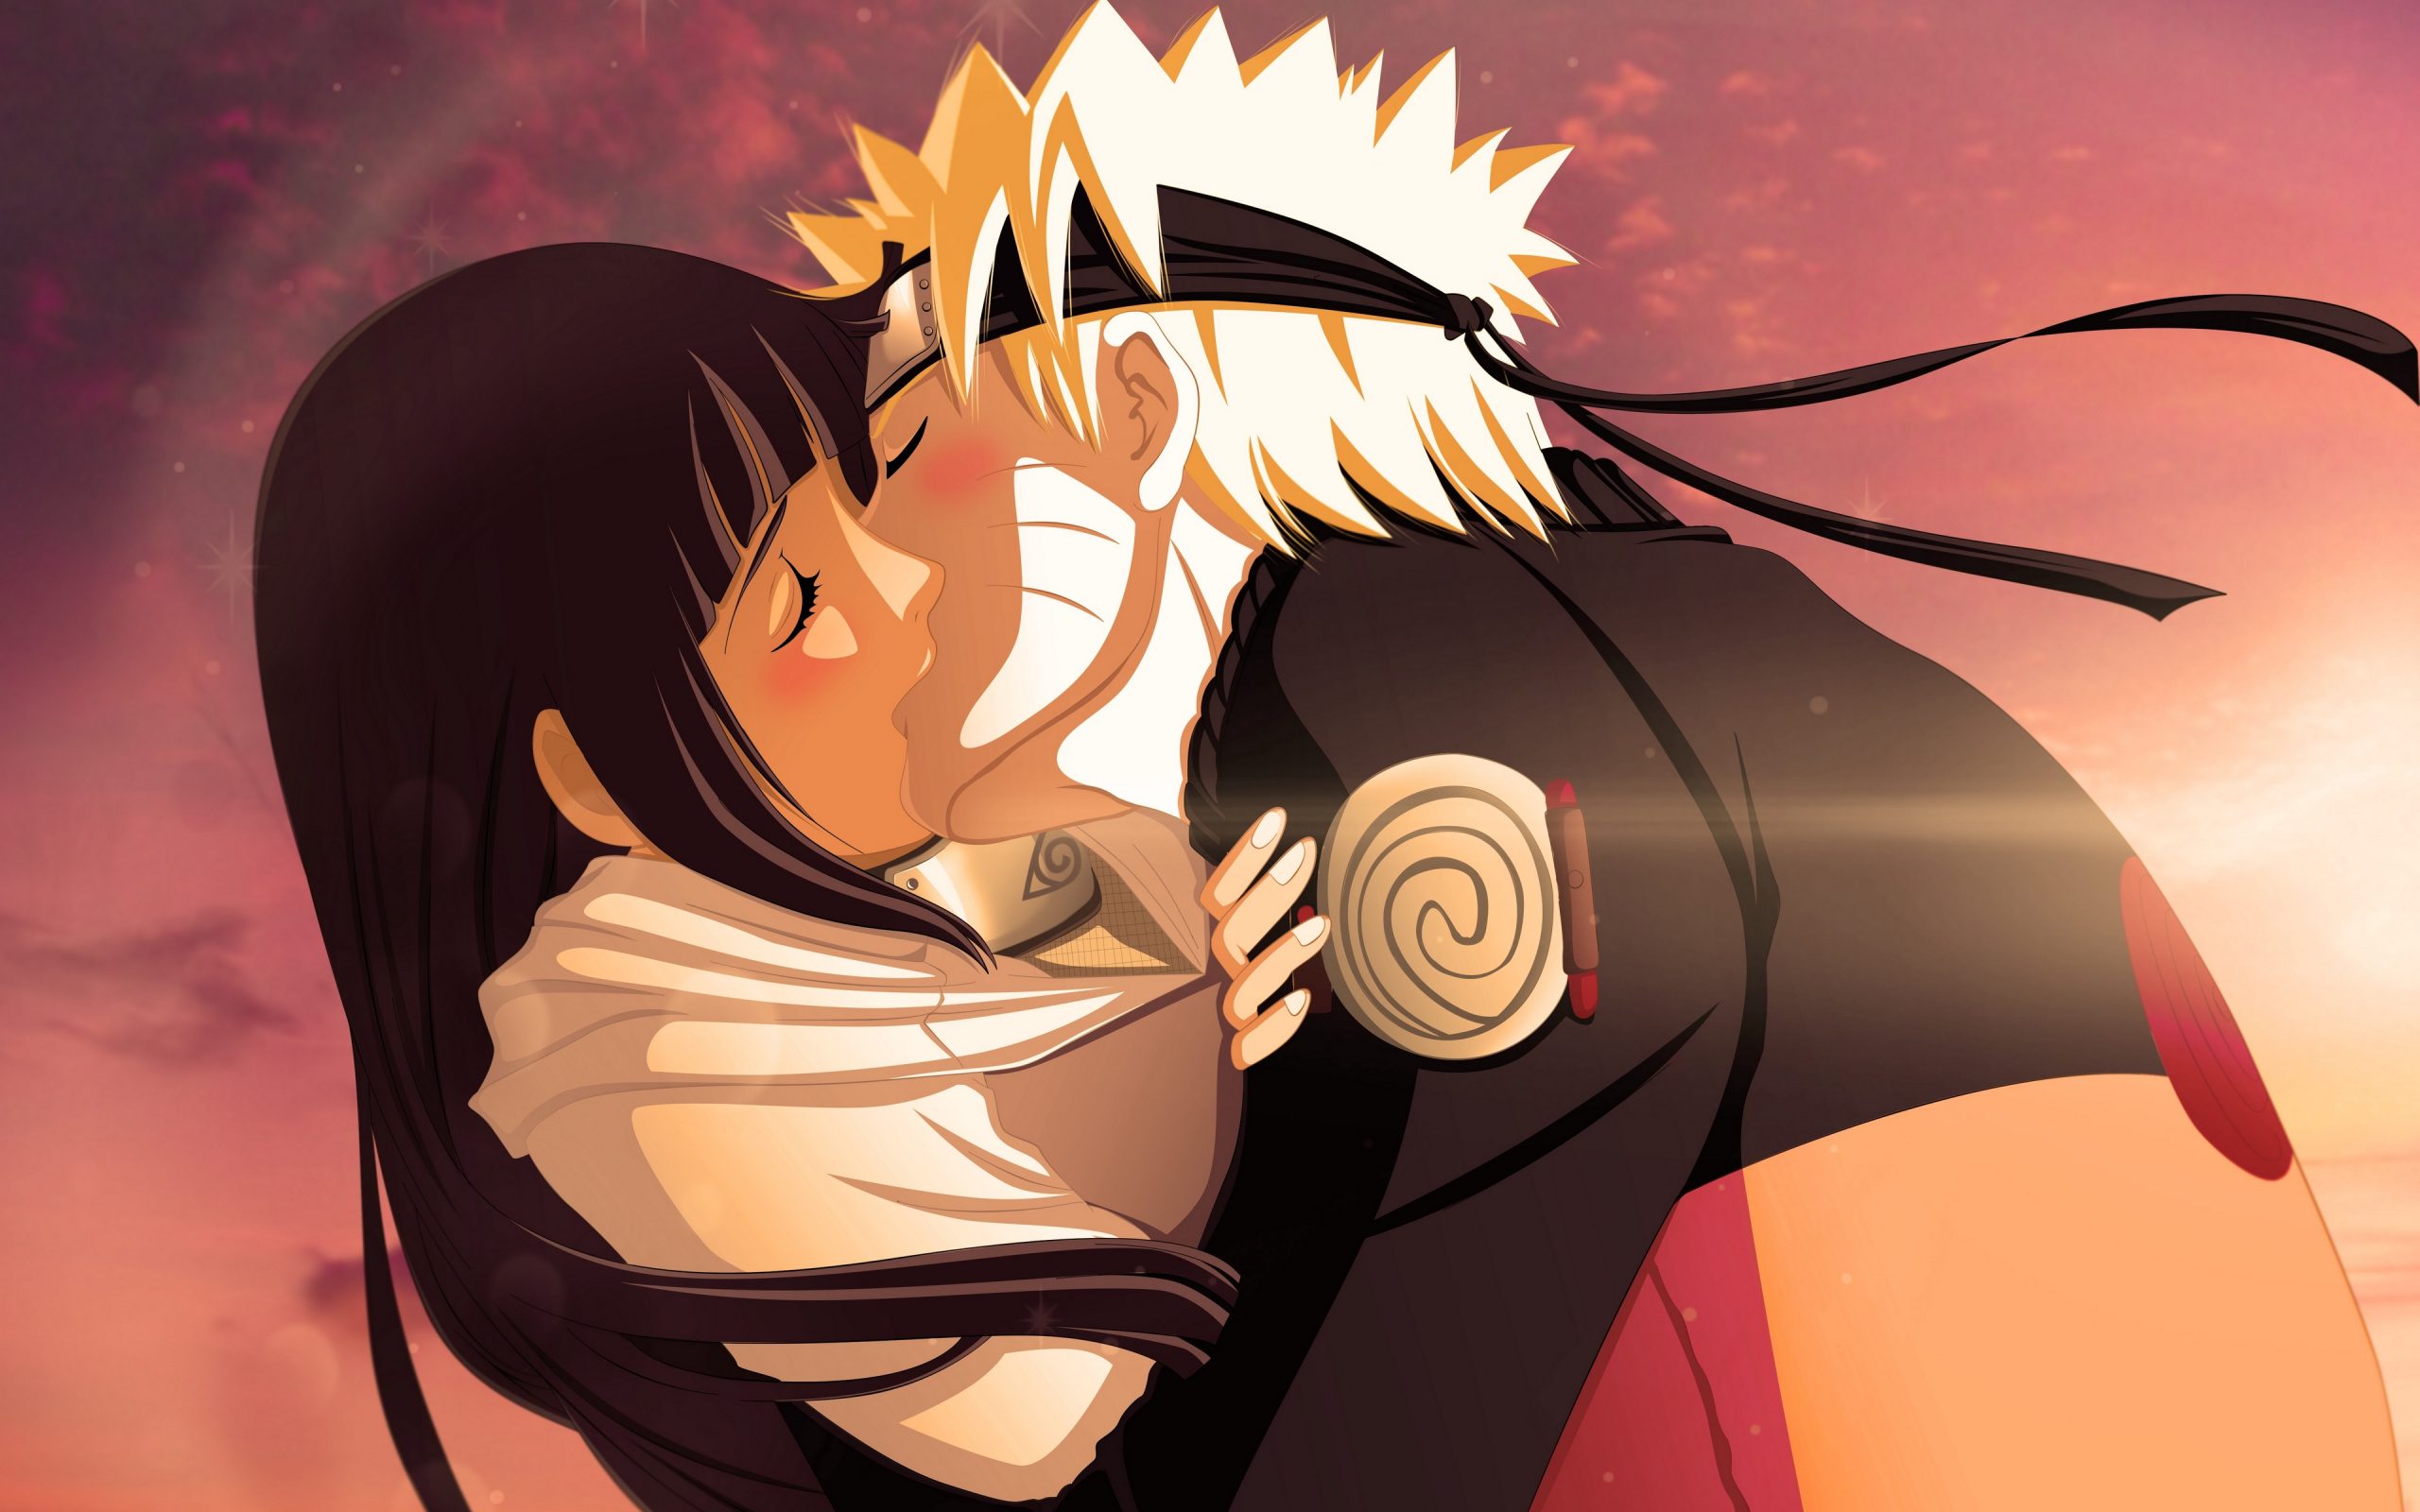 Các fan anime đam mê tình yêu đừng bỏ qua hình nền anime hôn nhau này! Đây là những bức ảnh đẹp và đầy cảm xúc của các cặp đôi anime yêu nhau. Hãy xem và cảm nhận một chút tình yêu ngọt ngào của anime.